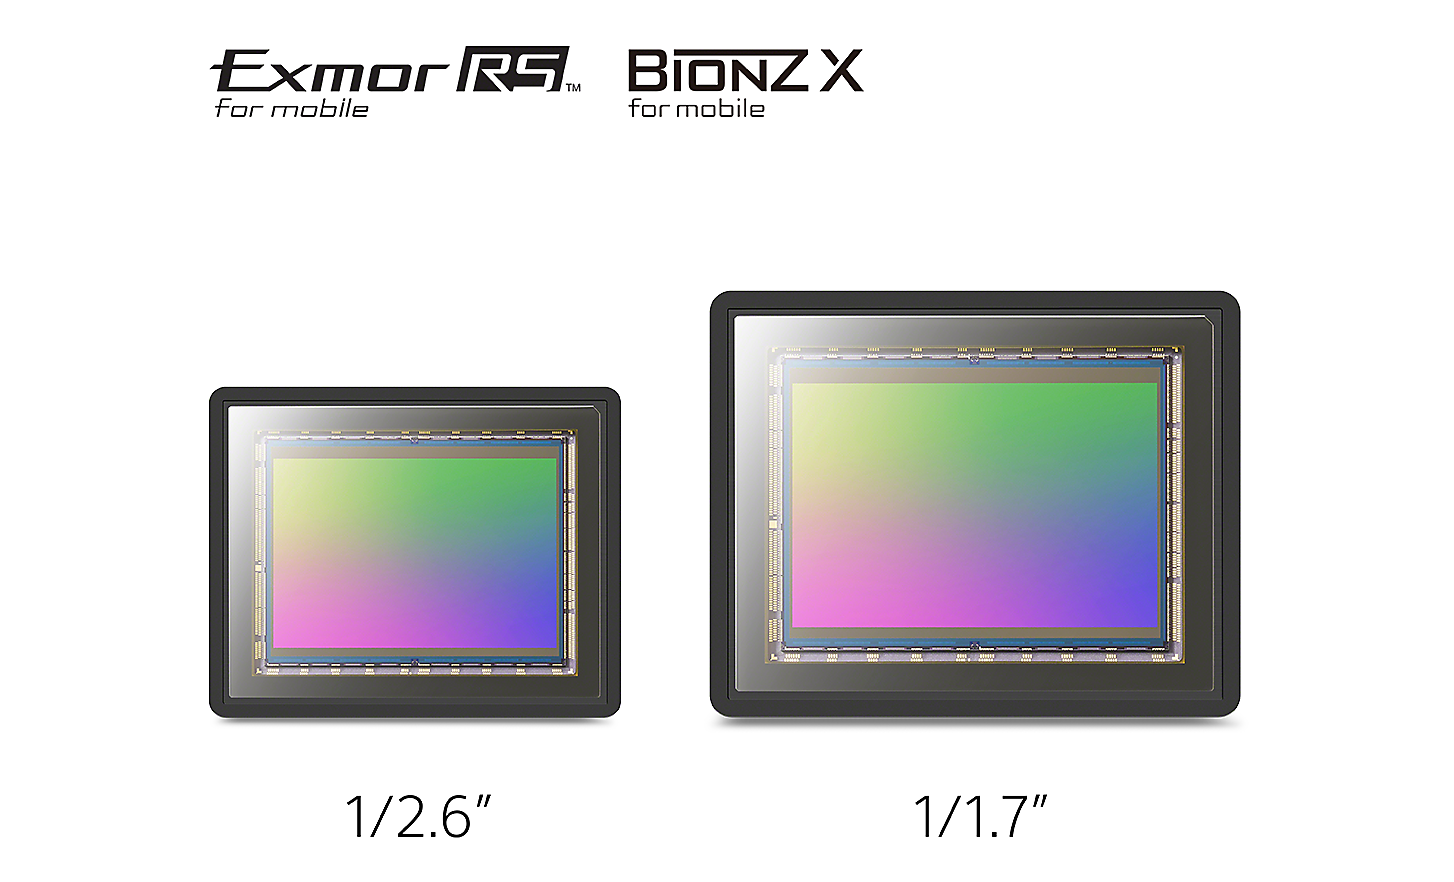 Imagen comparando un sensor de imagen de 1/2,6"; con un sensor de imagen de 1/1,7";, además de logotipos para Exmor RS™ para móviles y Bionz X™ para móvil